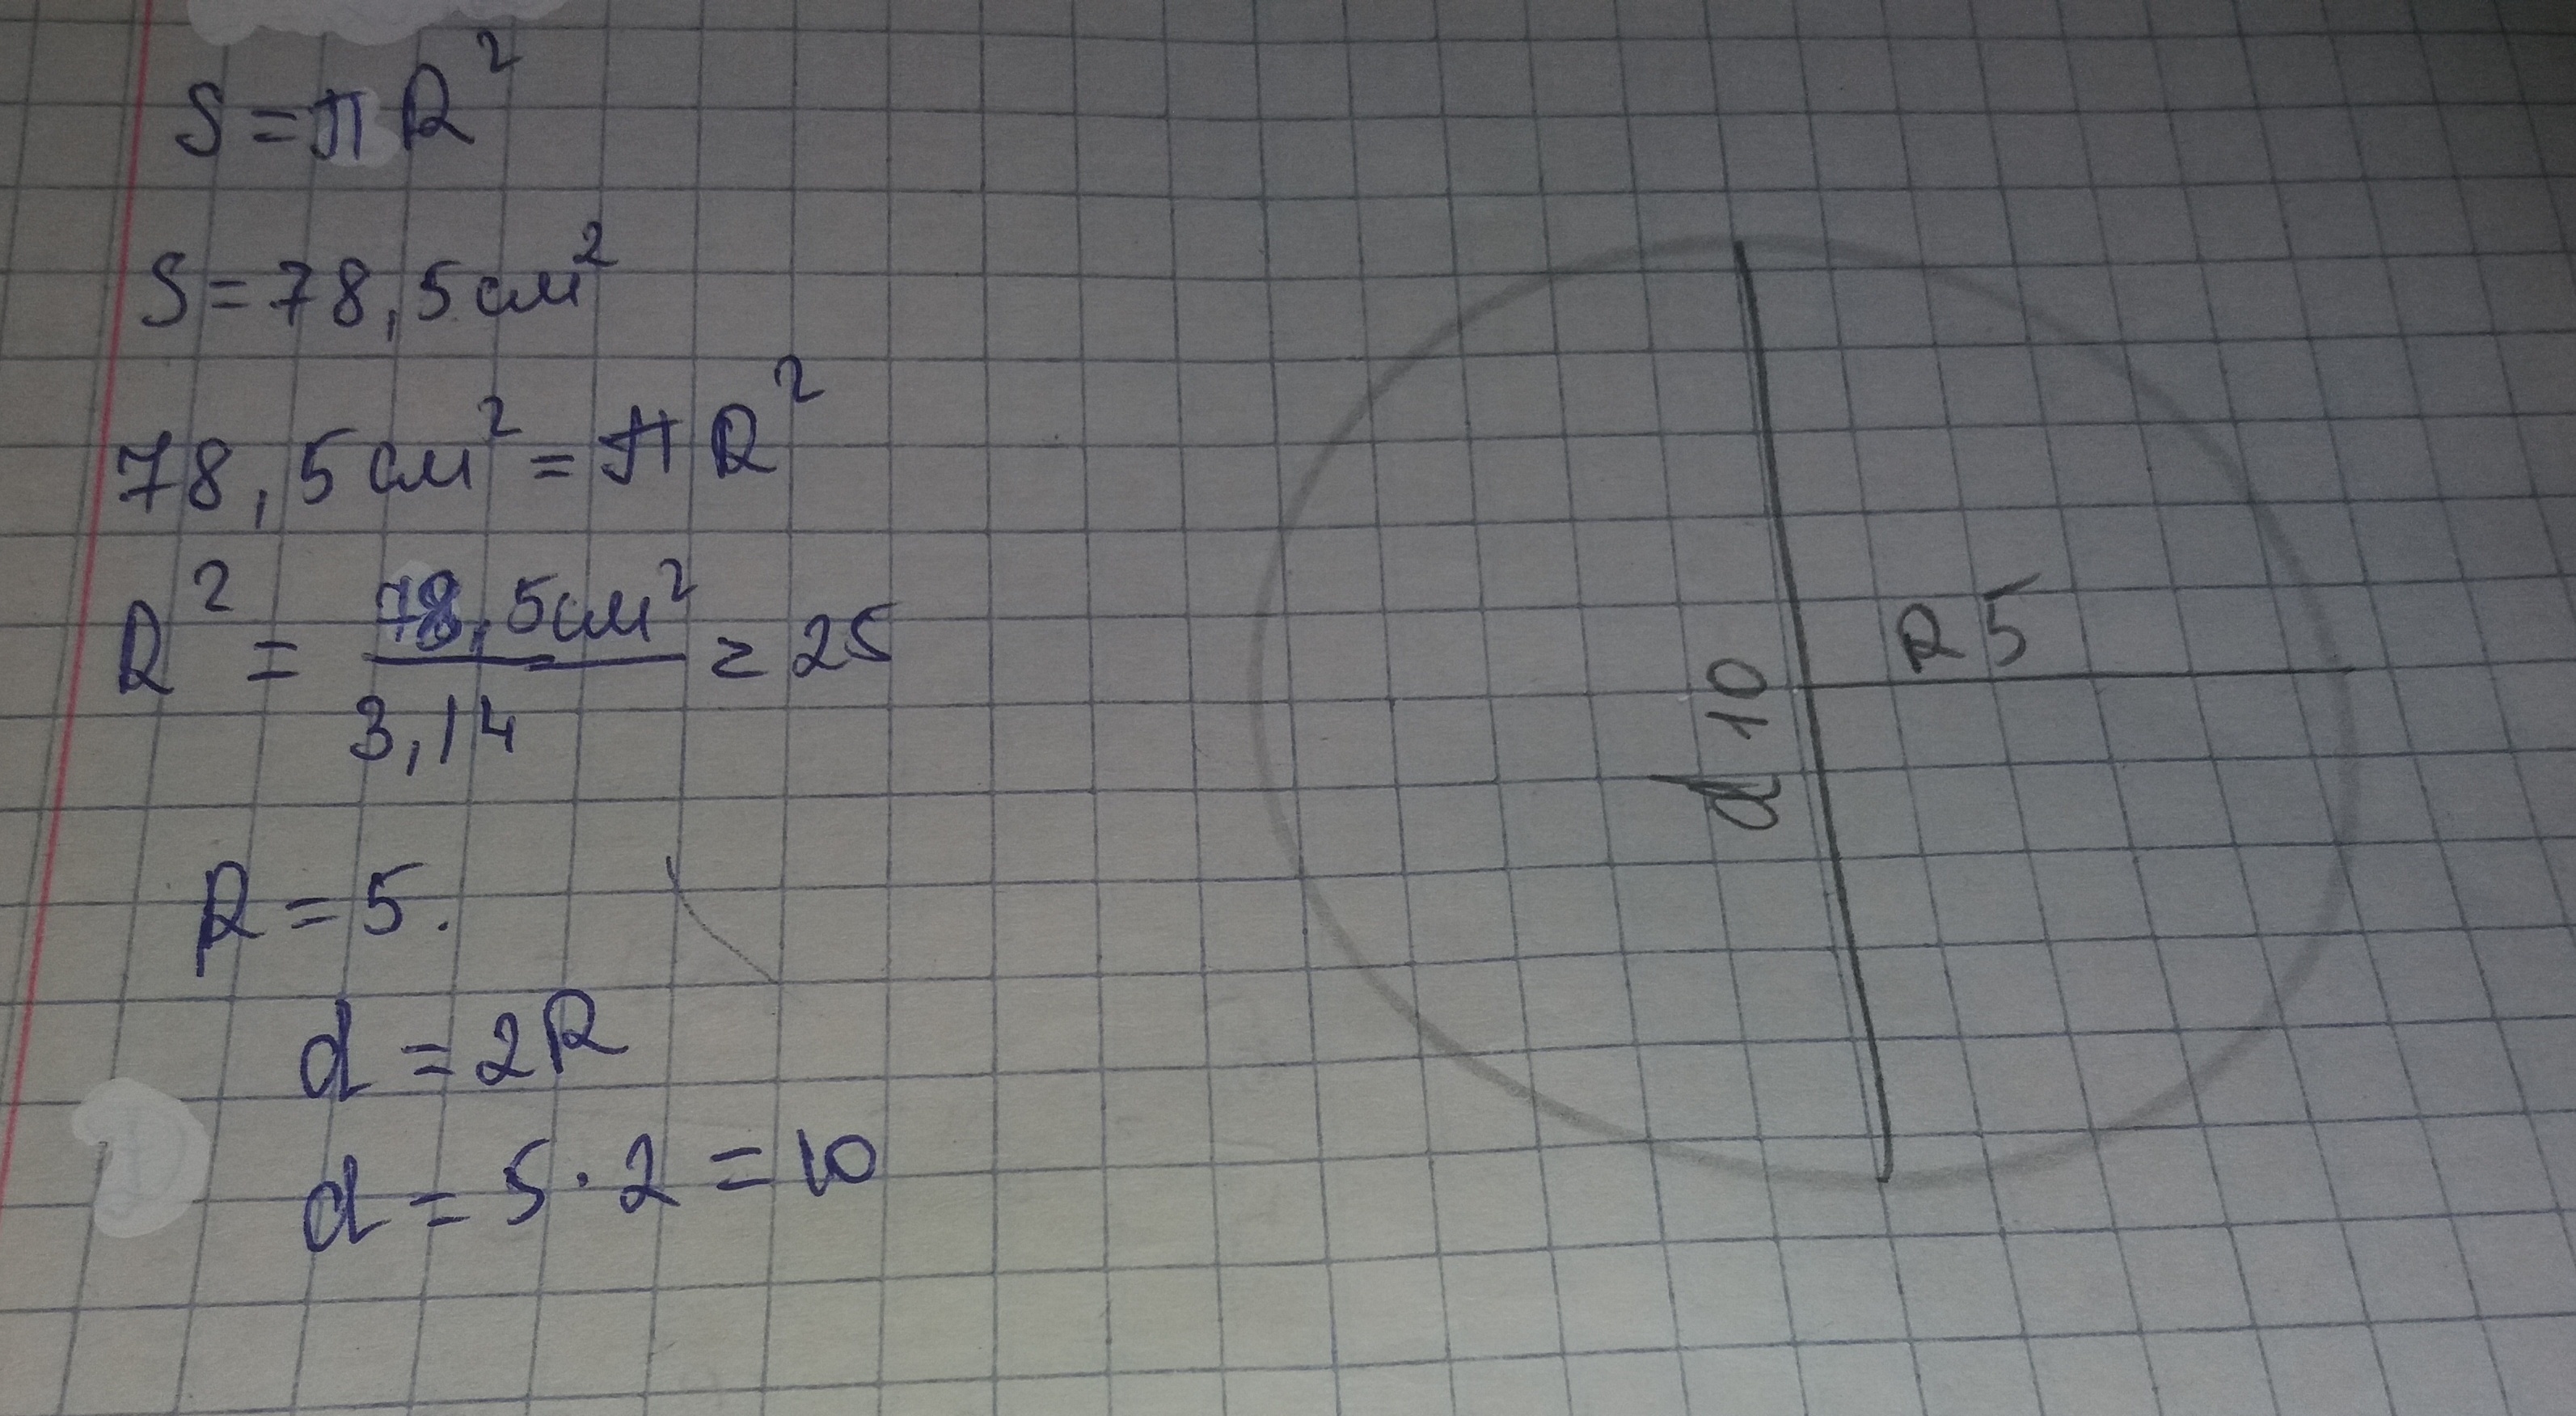 Диаметр круга 14 см. Площадь круга что такое пи. Диаметр окружности 14 см. Найдите площадь круга если его радиус 2.3 см. Найдите площадь круга если его радиус 5 см.